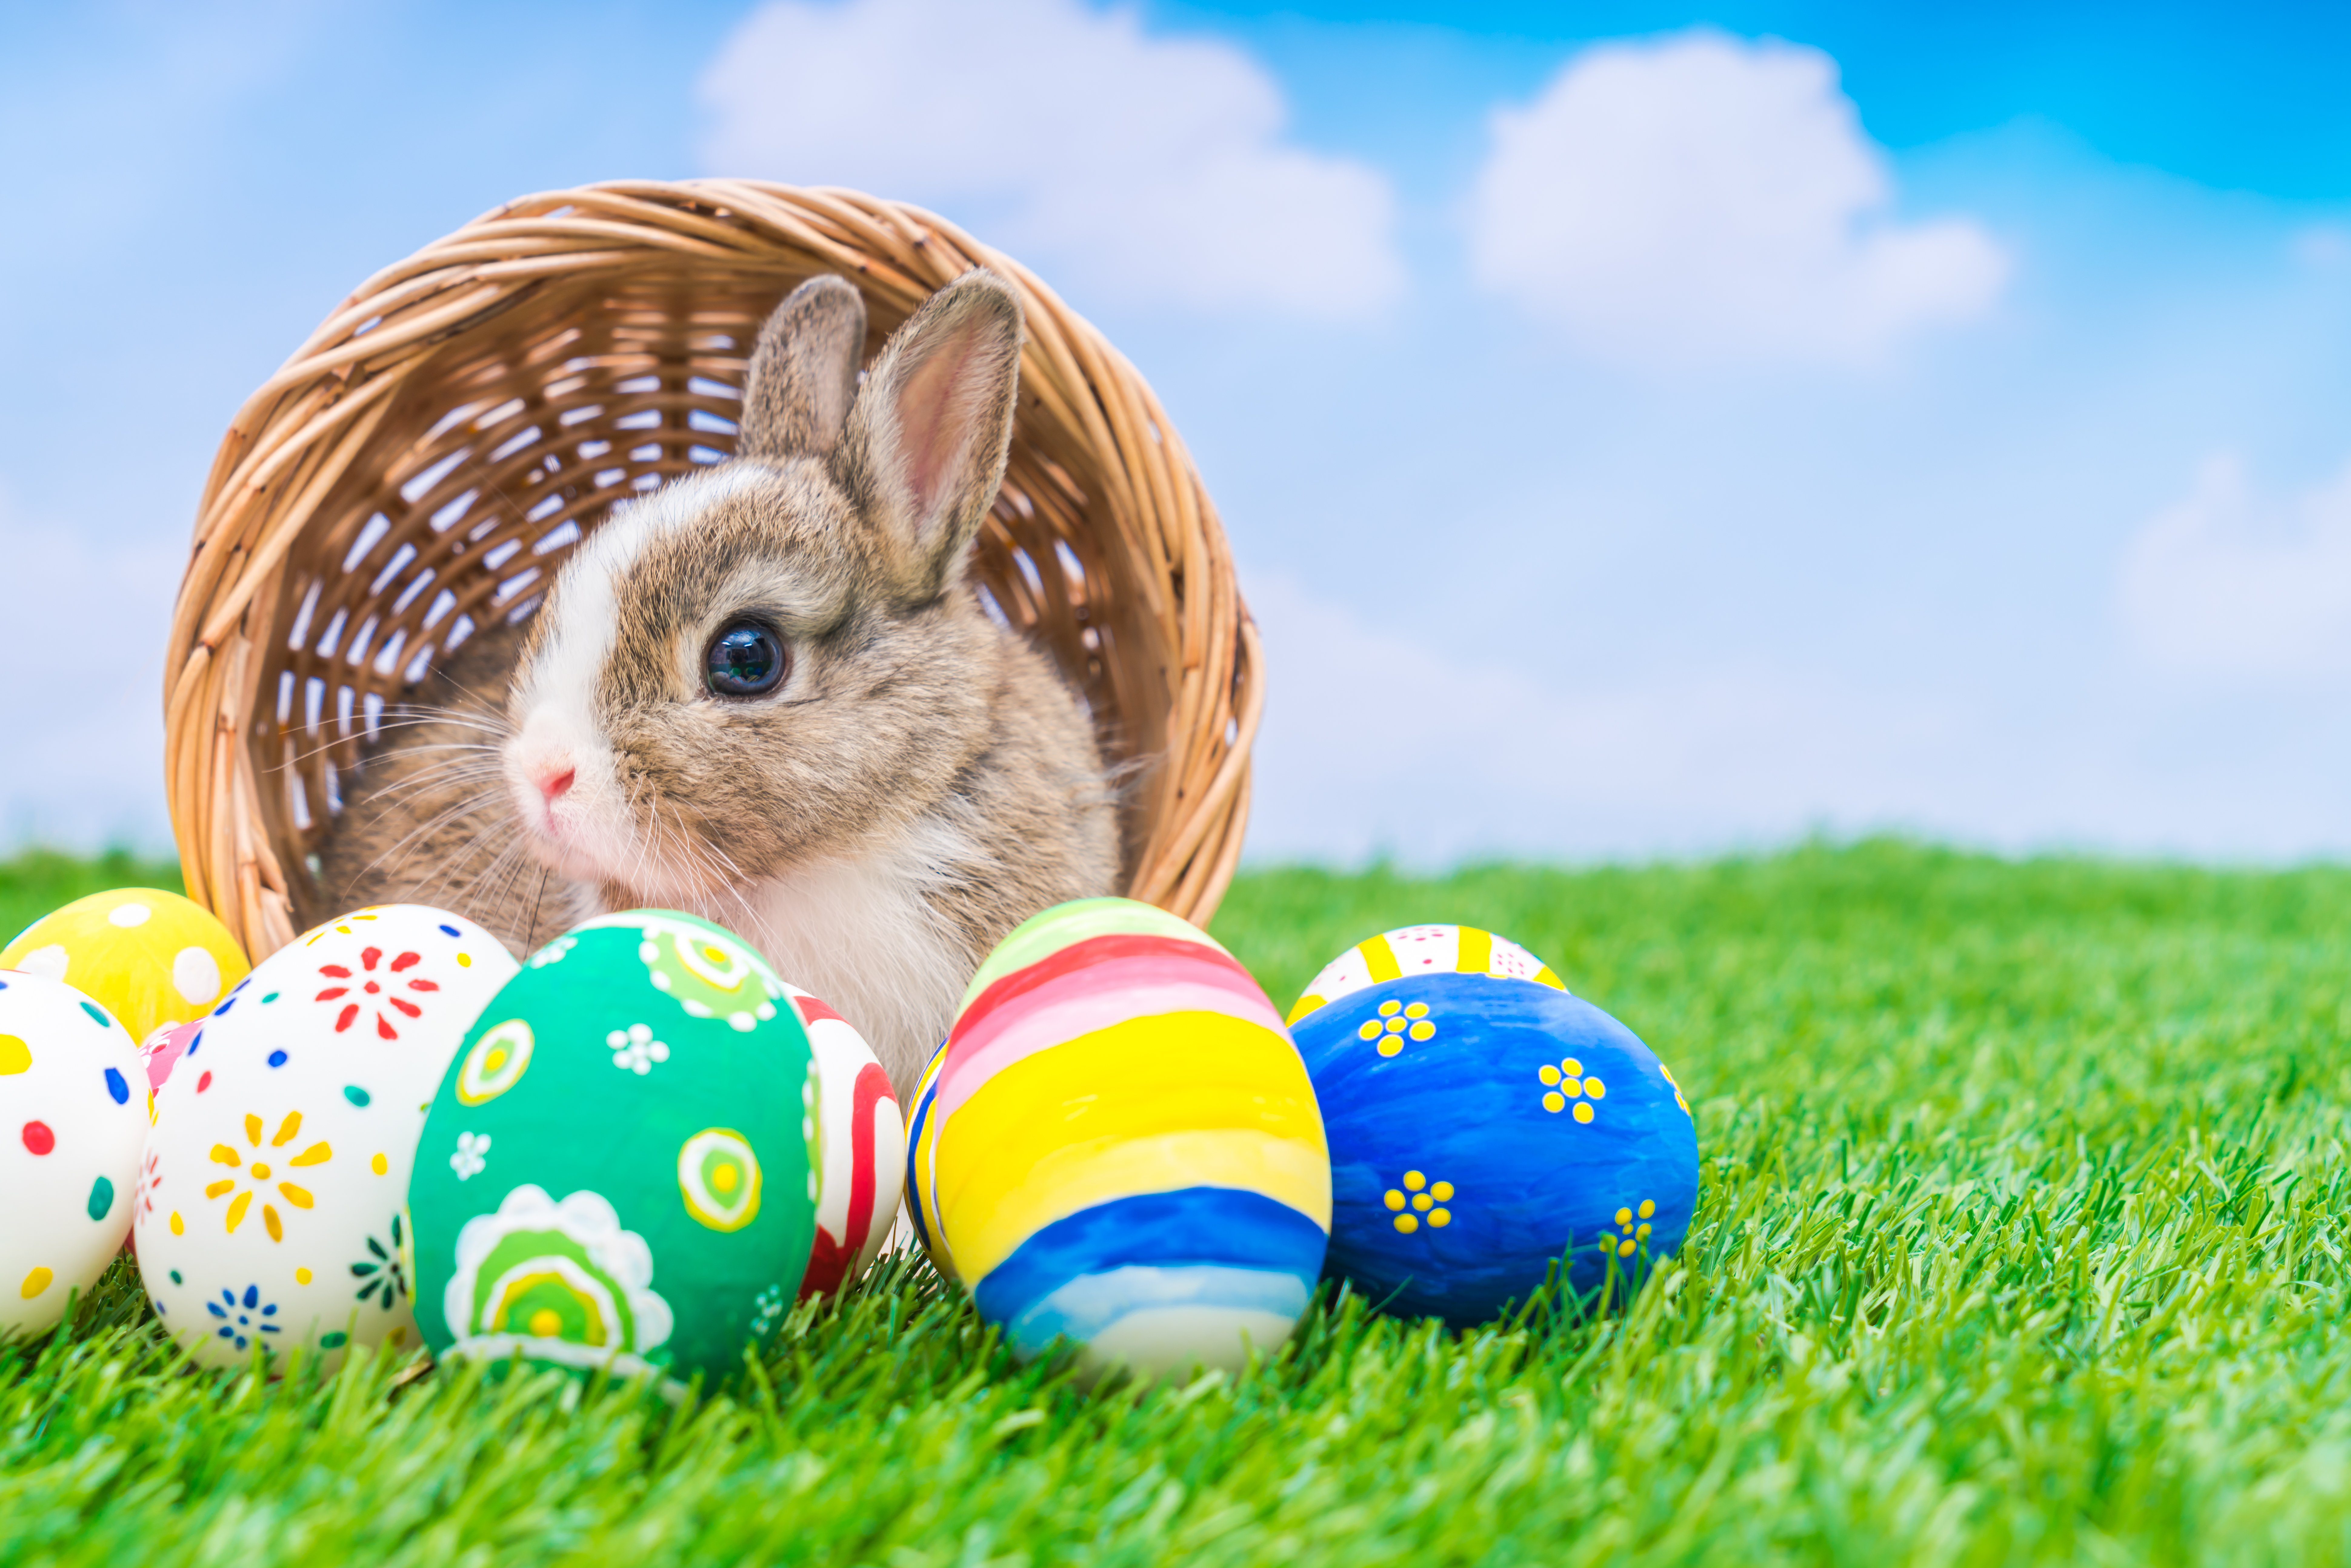 Символы католической пасхи. Пасхальный кролик Ostern. Easter Bunny — Пасхальный кролик. Пасхальное яйцо. Пасхальный заяц с яйцом.